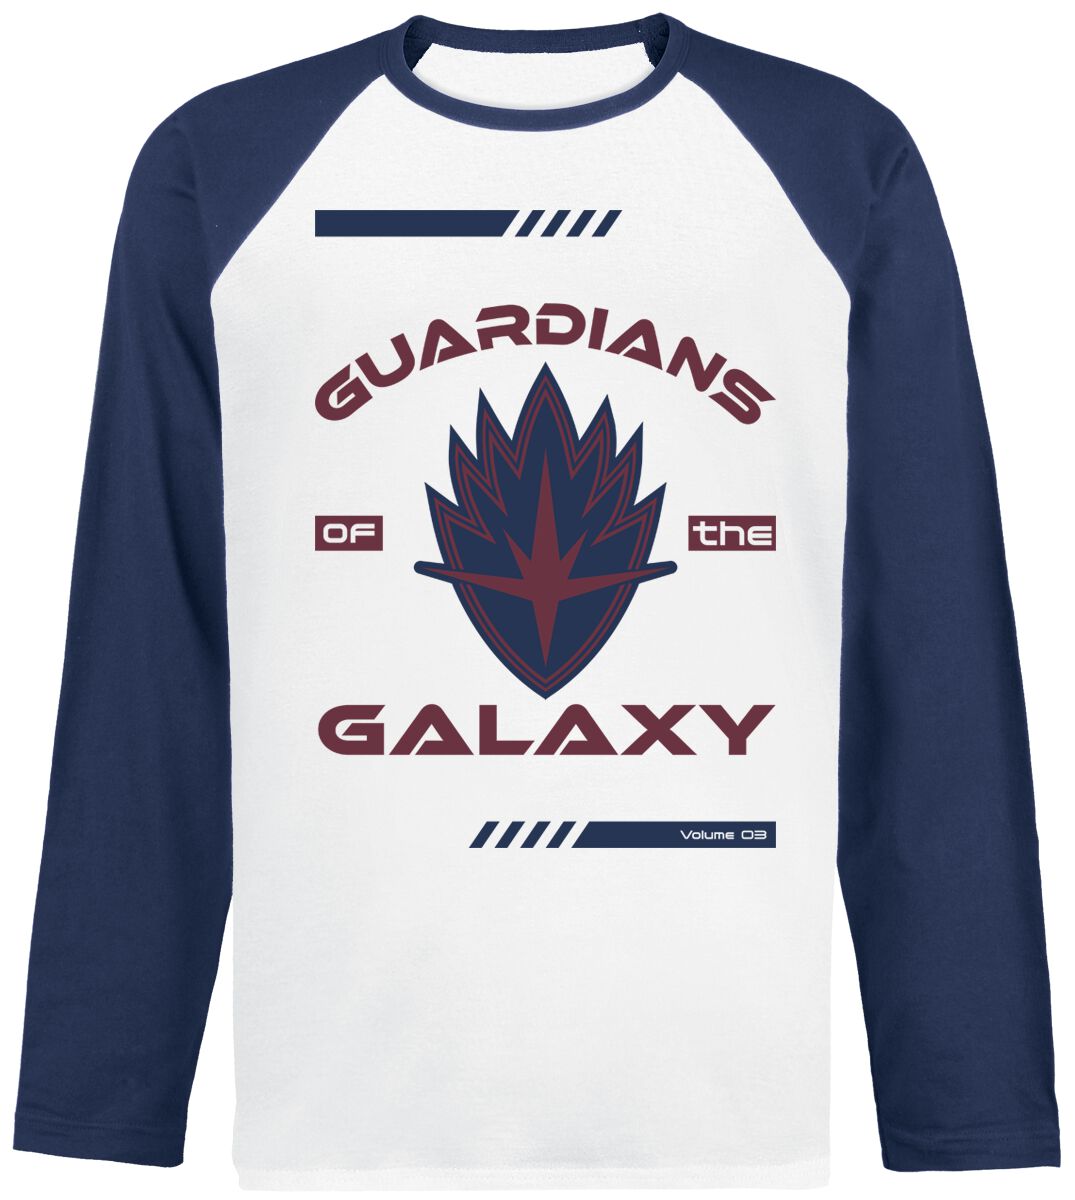 Guardians Of The Galaxy - Marvel Langarmshirt - Vol. 3 - Badge - S bis XL - für Männer - Größe XL - weiß/navy  - EMP exklusives Merchandise!